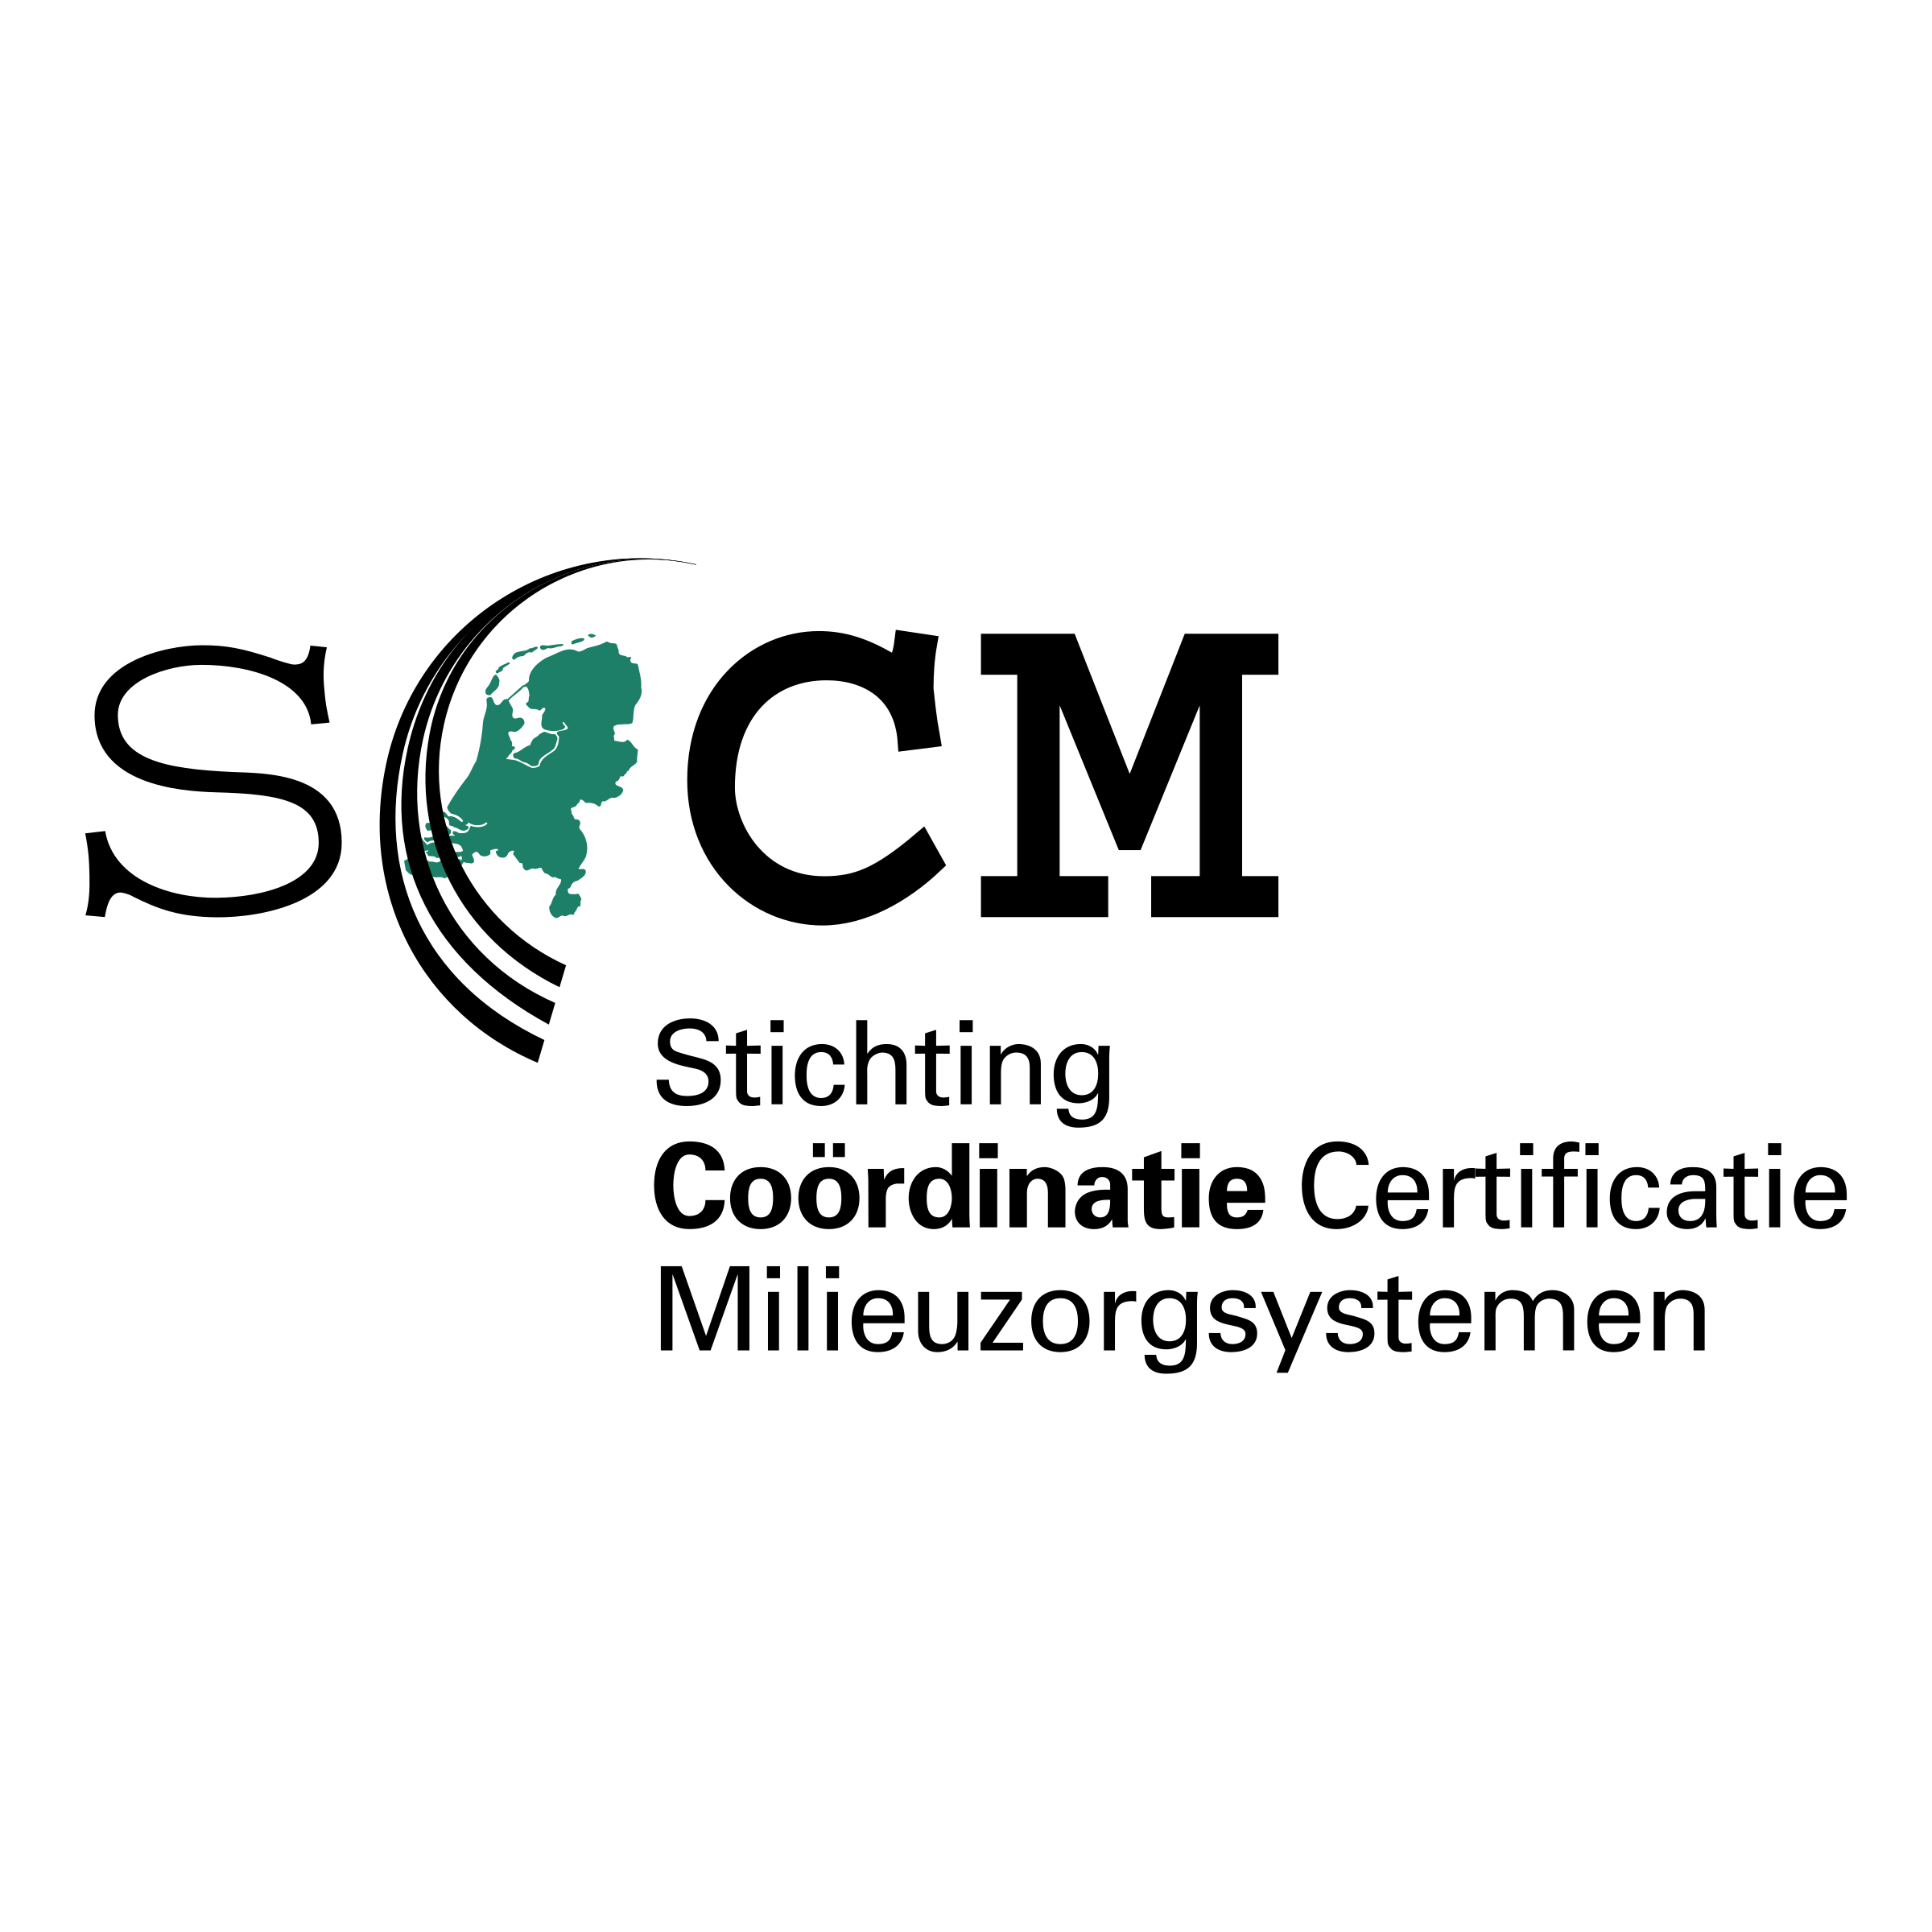 SCCM Logo - SCCM Logo PNG Transparent & SVG Vector - Freebie Supply